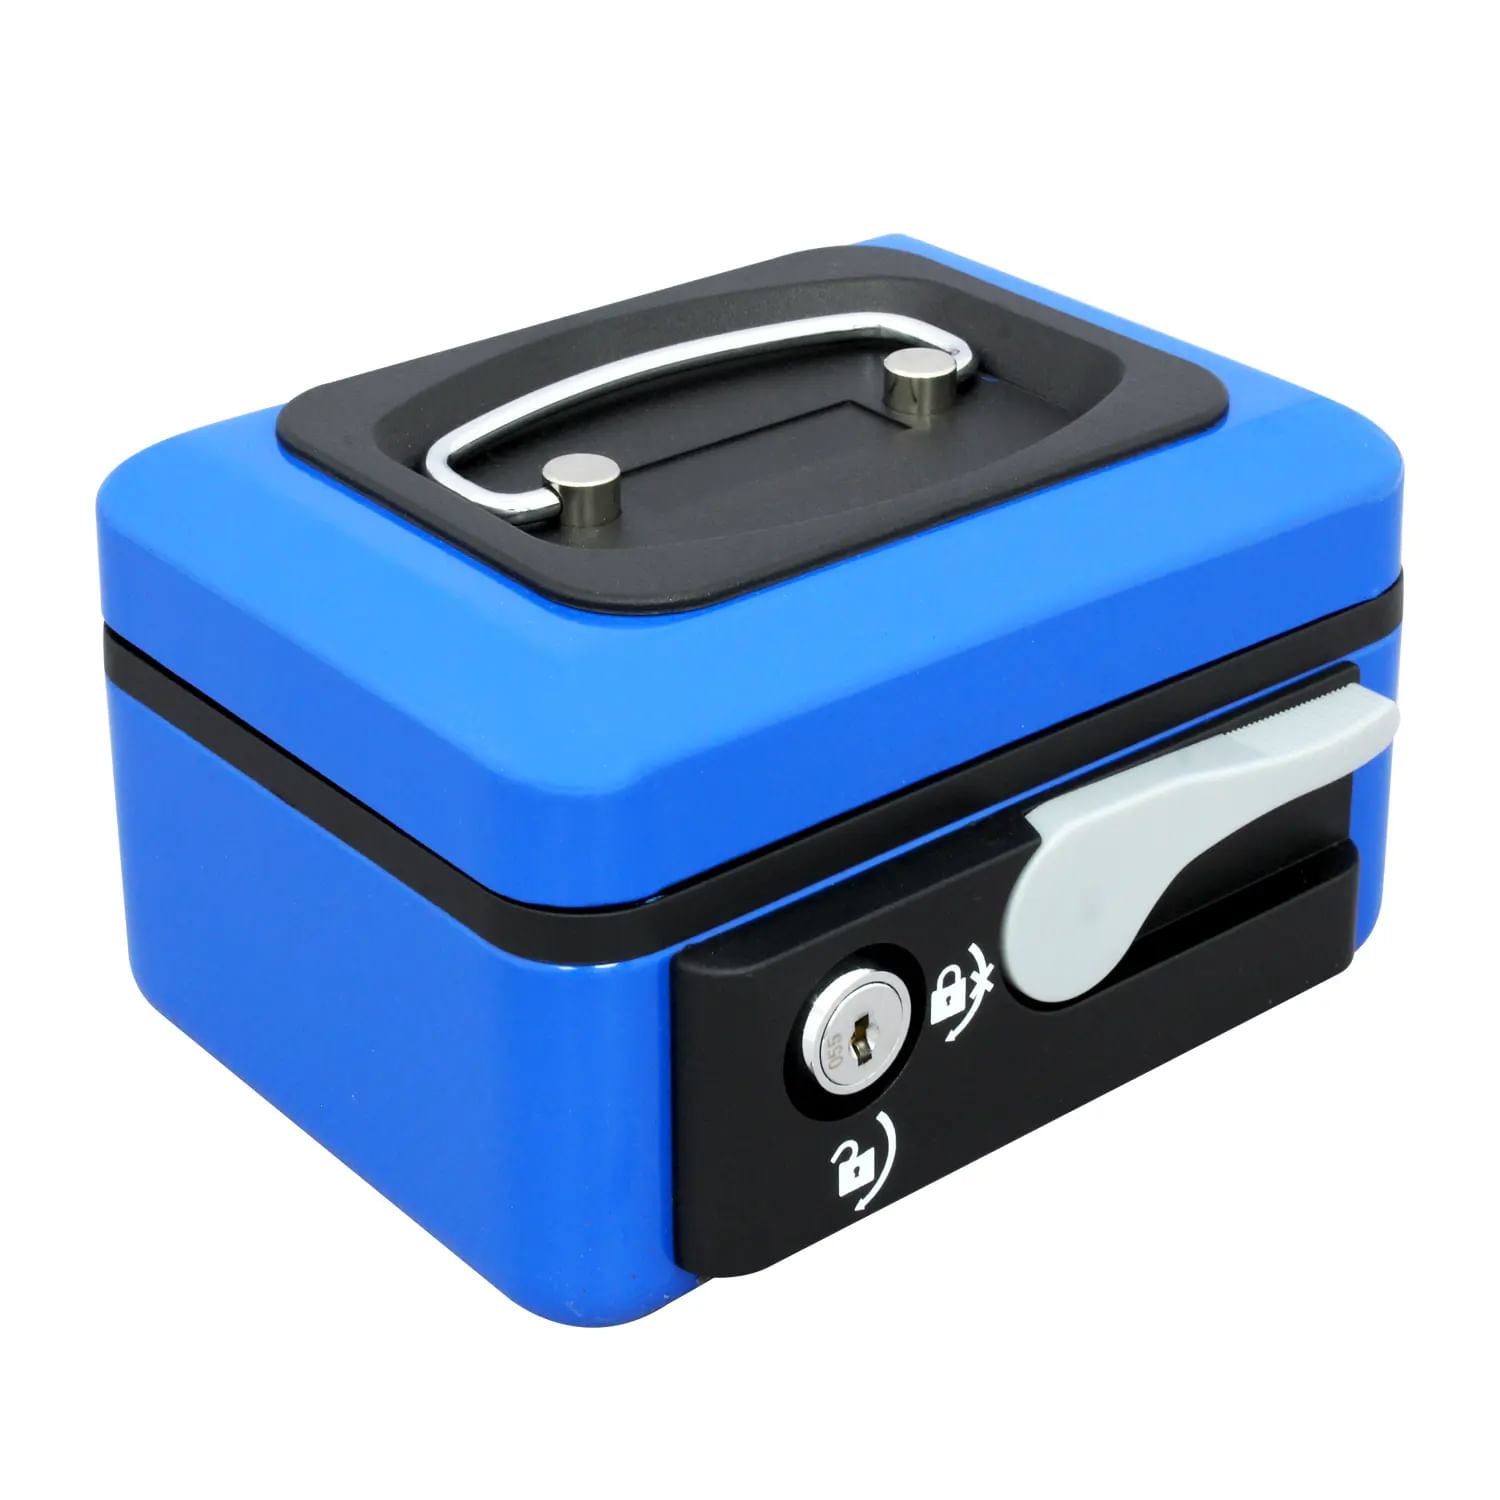 Caja de seguridad 6 (152 x 118 x 80 mm) Azul Isofit 5579-4 –